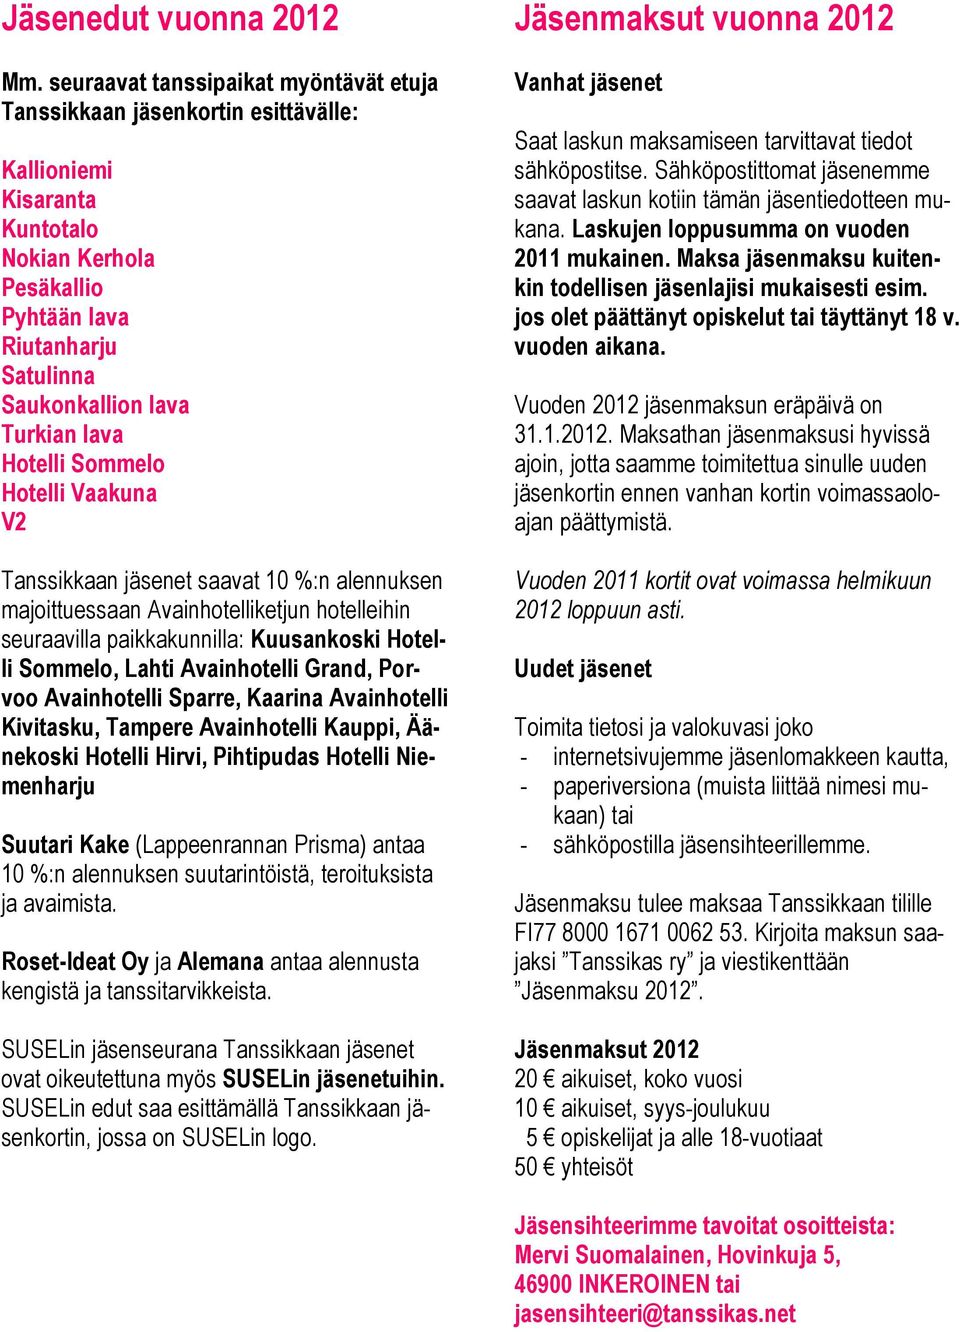 lava Hotelli Sommelo Hotelli Vaakuna V2 Tanssikkaan jäsenet saavat 10 %:n alennuksen majoittuessaan Avainhotelliketjun hotelleihin seuraavilla paikkakunnilla: Kuusankoski Hotelli Sommelo, Lahti